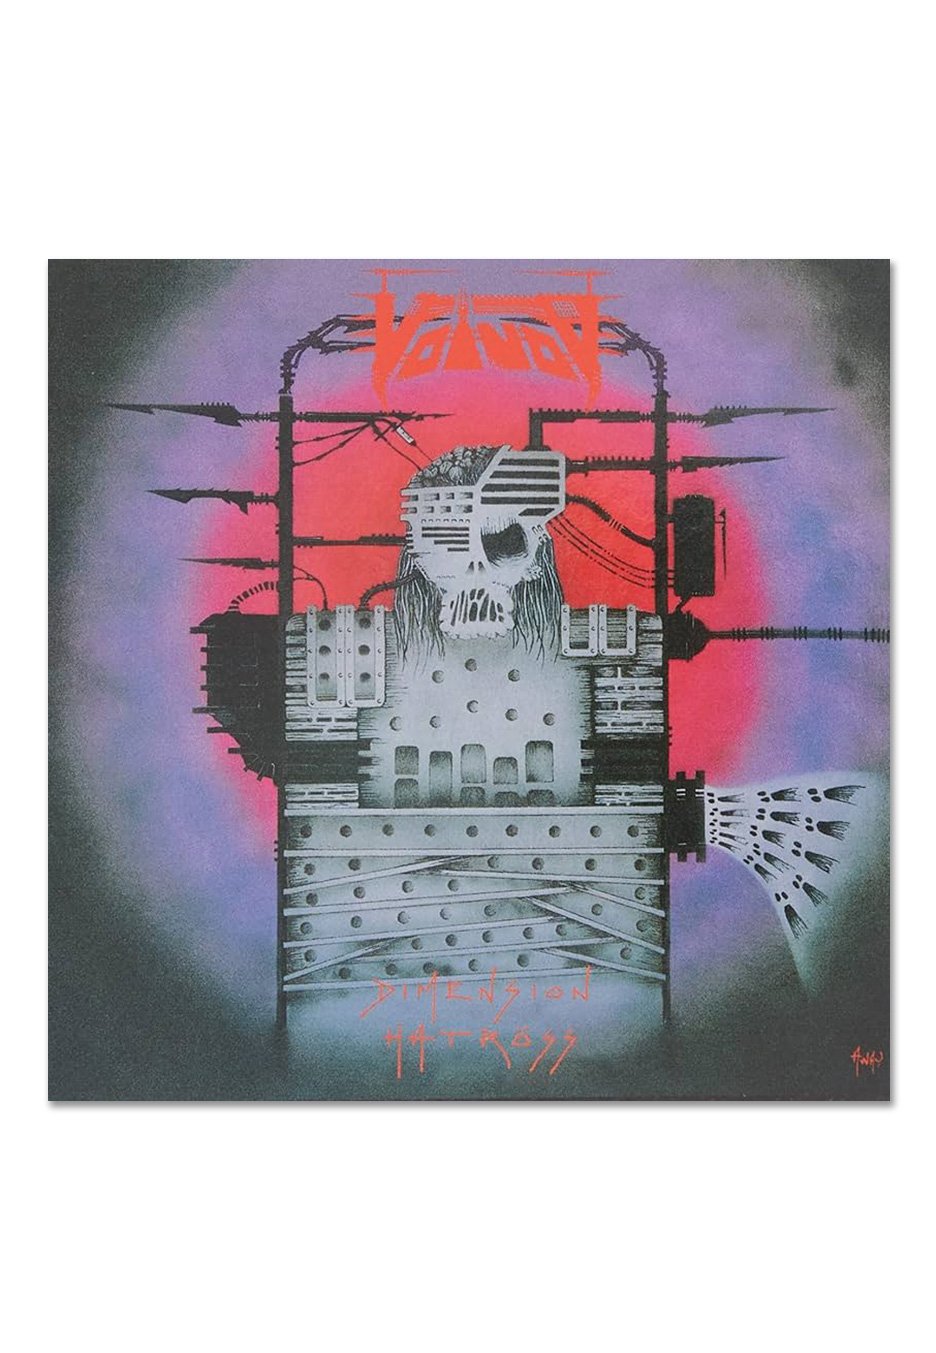 Voivod - Dimension Hatröss Ltd. White w/ Pink Splatter - Colored Vinyl